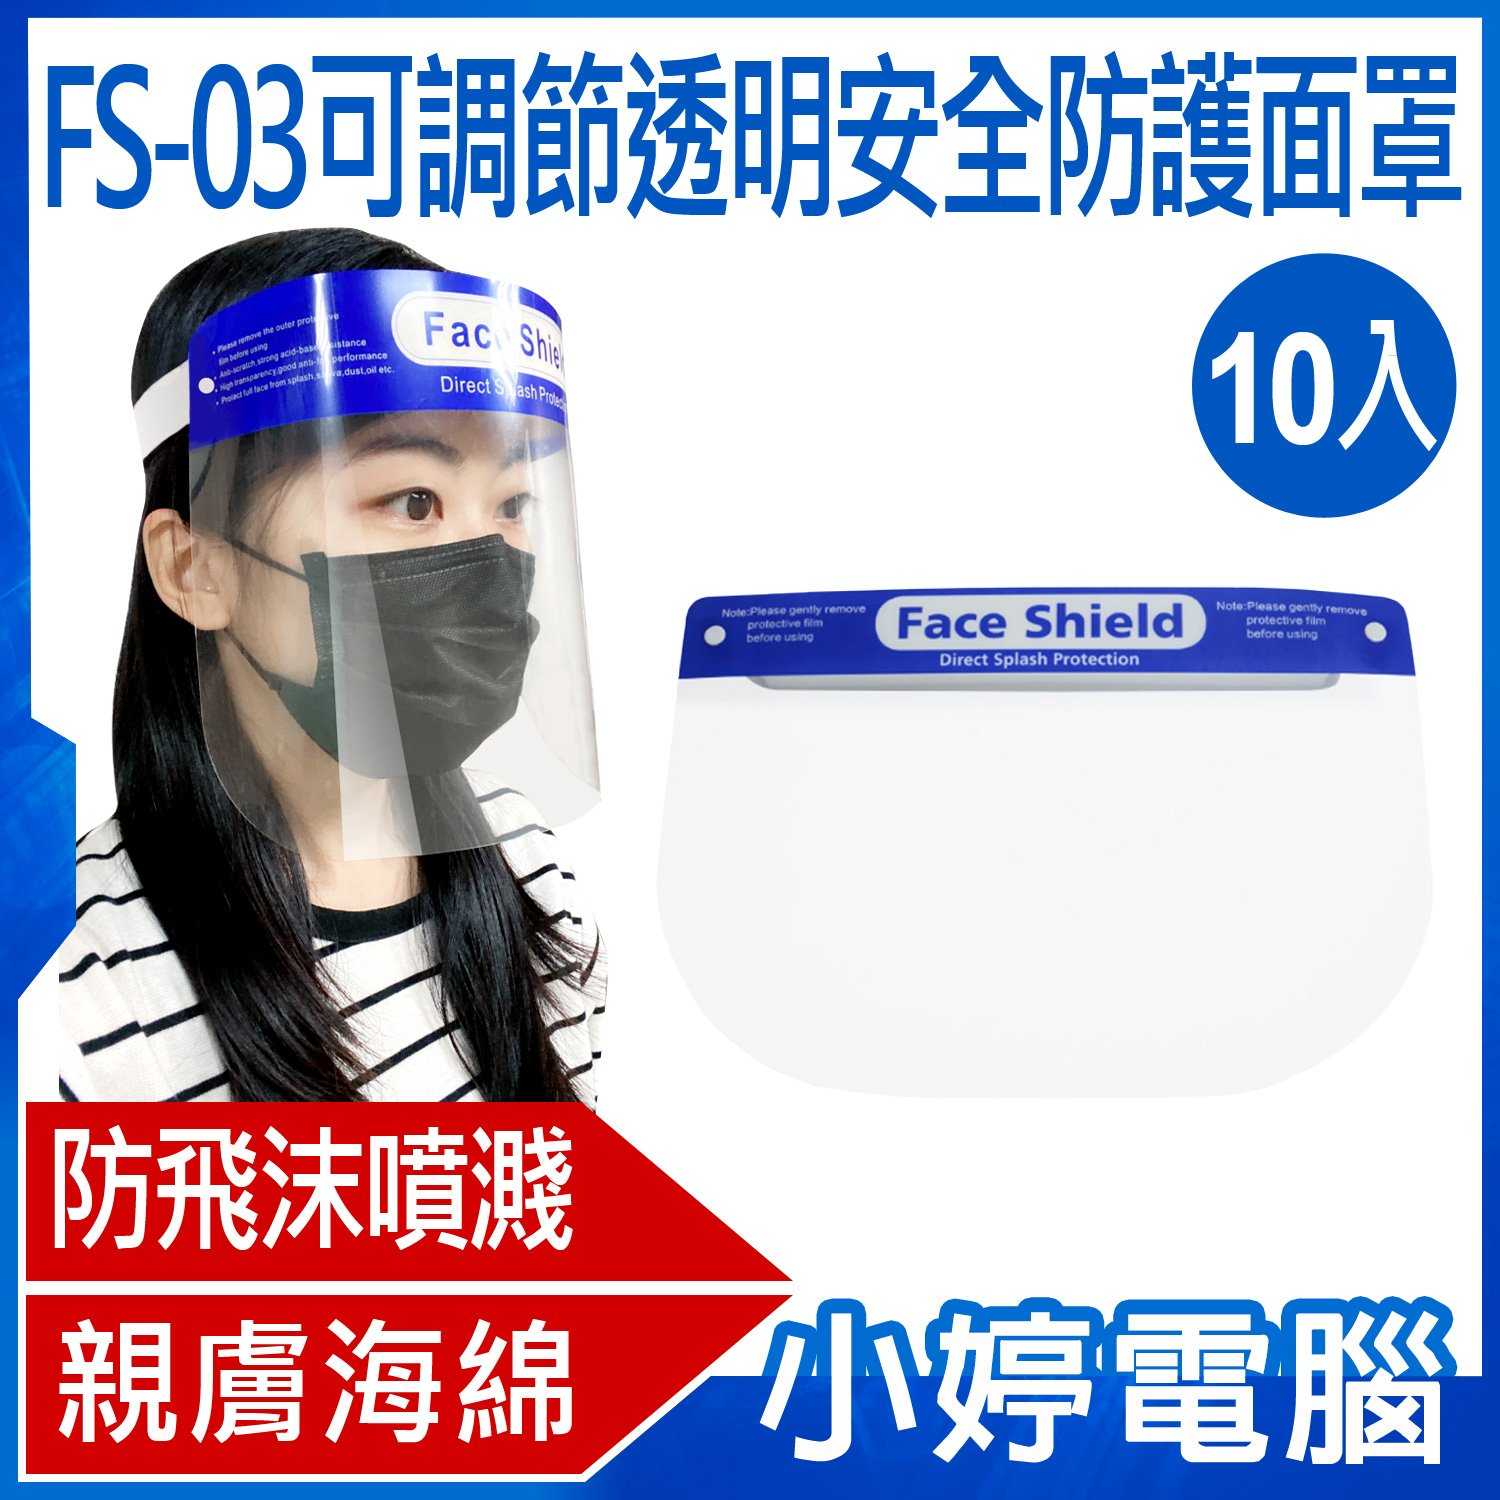 【小婷電腦】FS-03可調節透明安全防護面罩 防飛沫噴濺 高度透明 親膚海綿 加大面罩 面具 全臉防護 10入